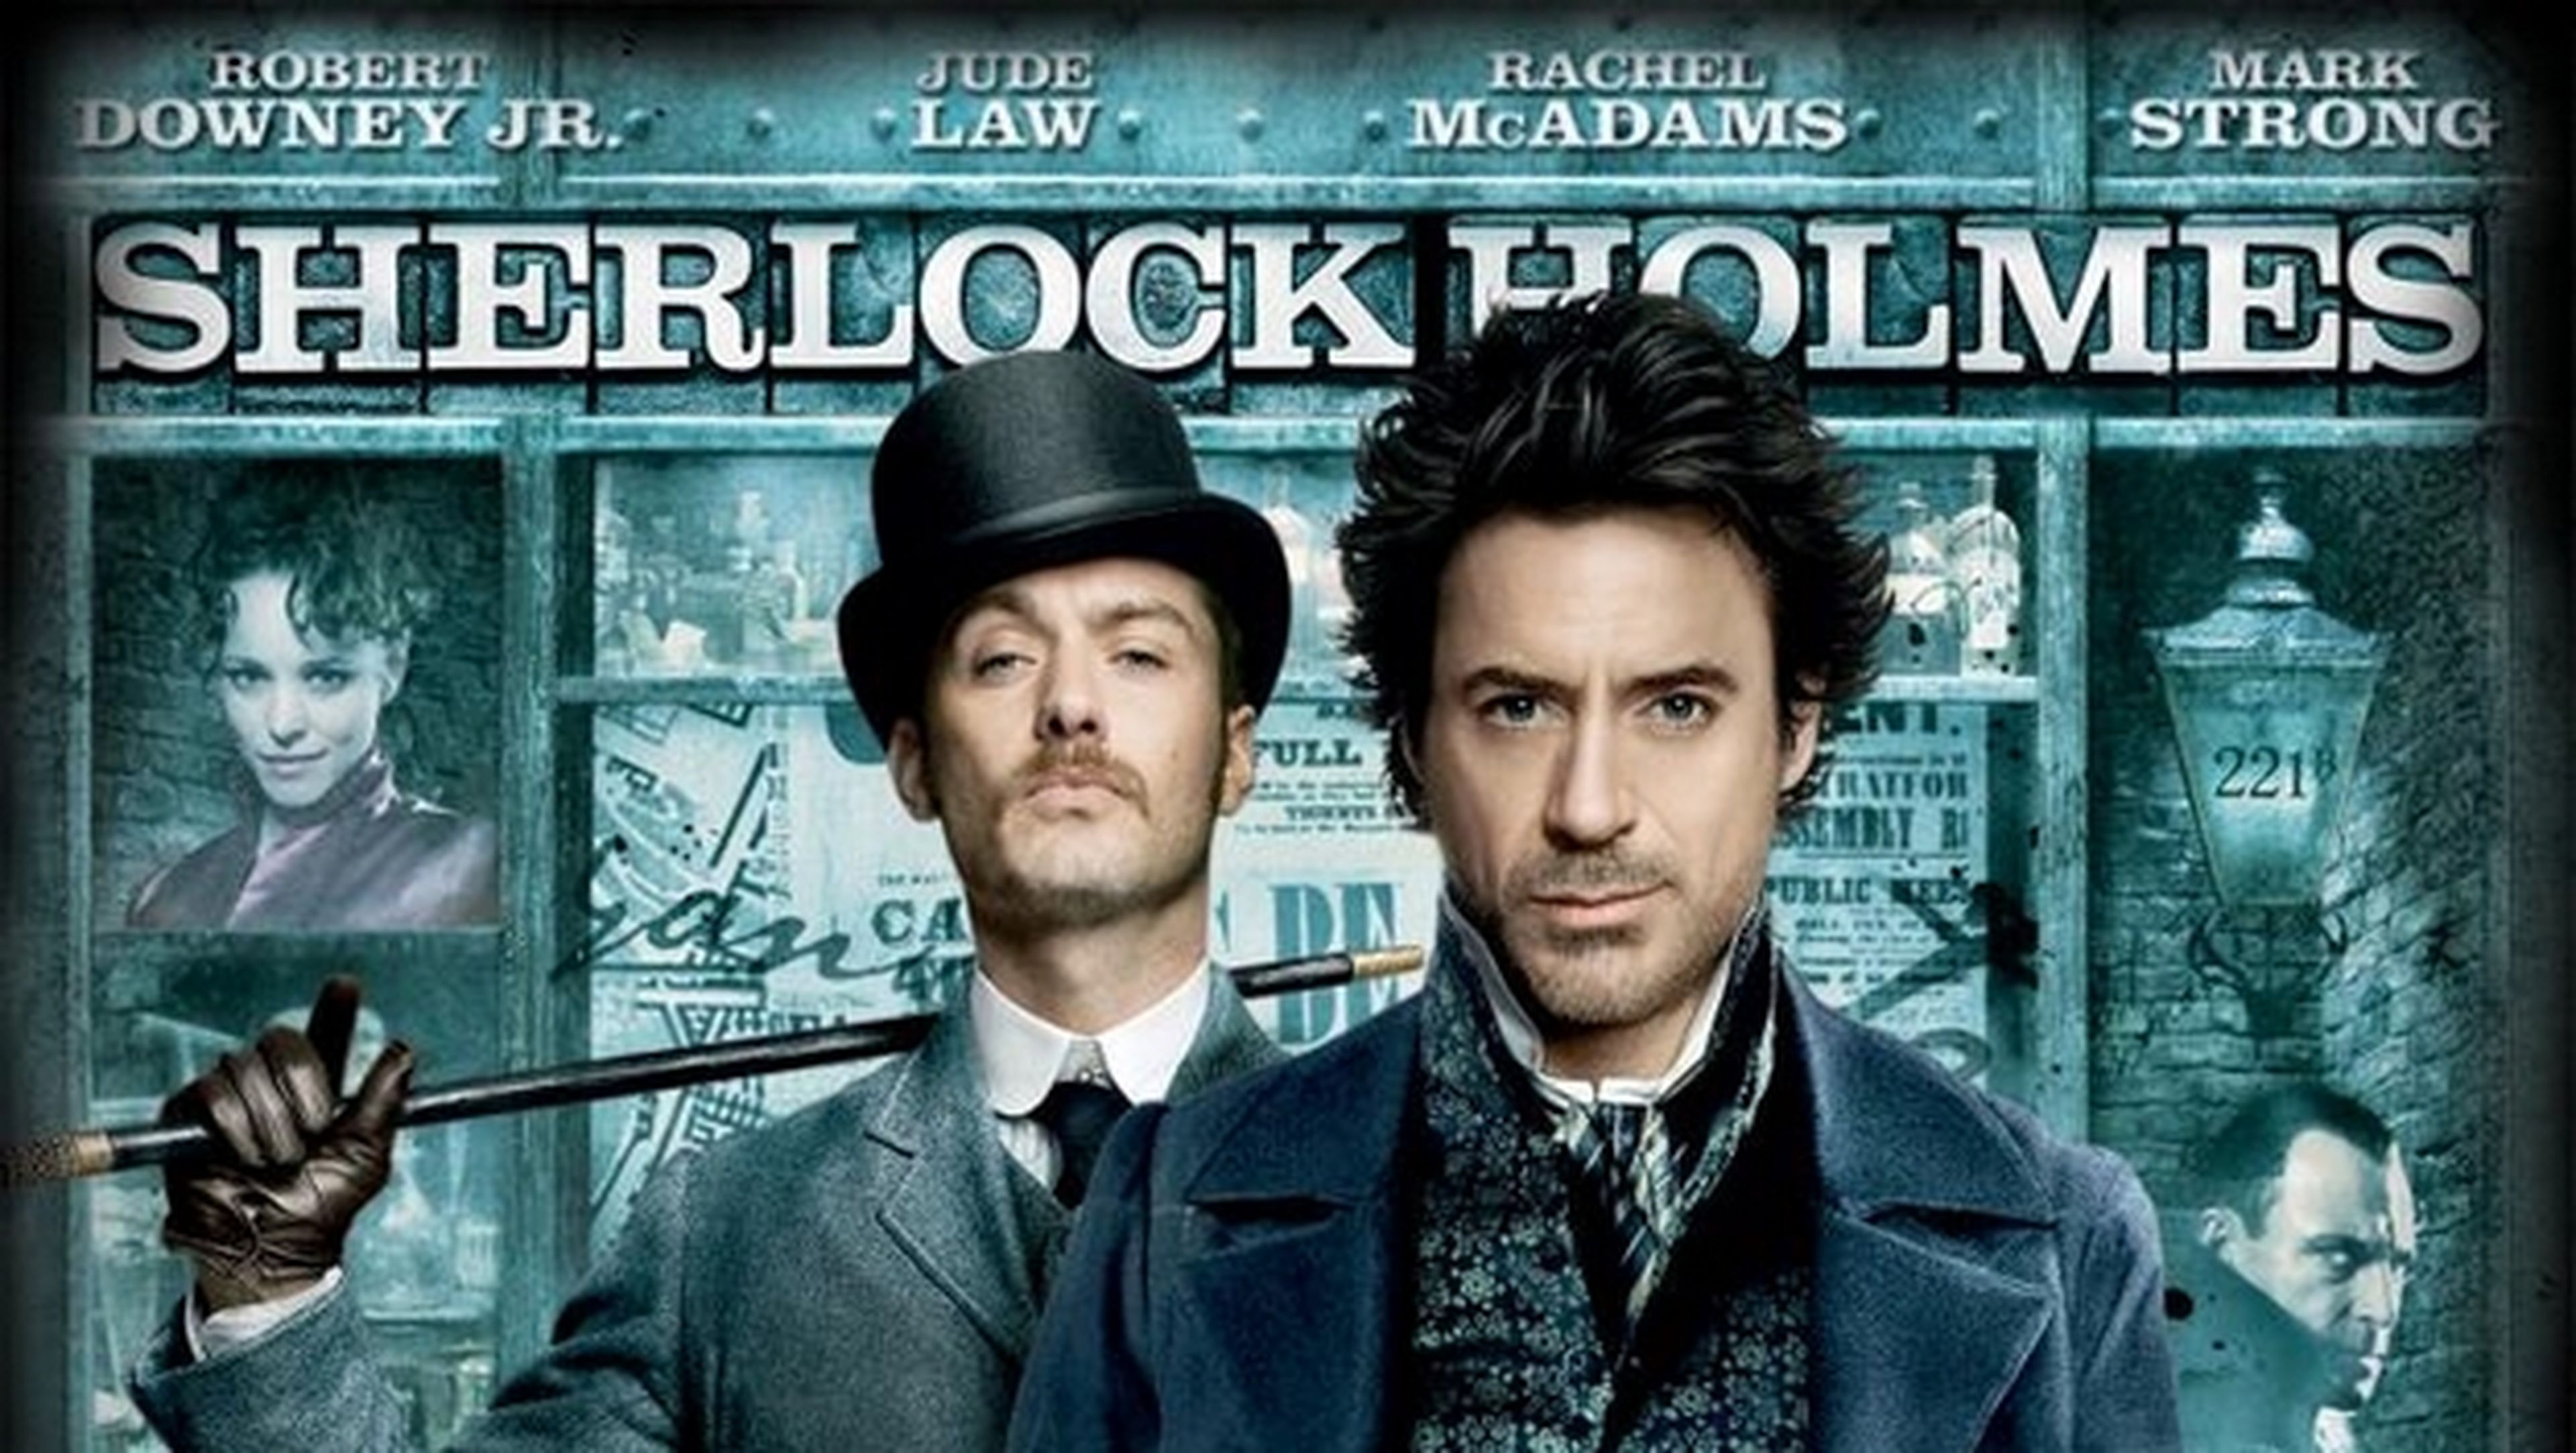 Descarga la película Sherlock Holmes gratis en castellano con Robert Downey Jr. en Google Play.